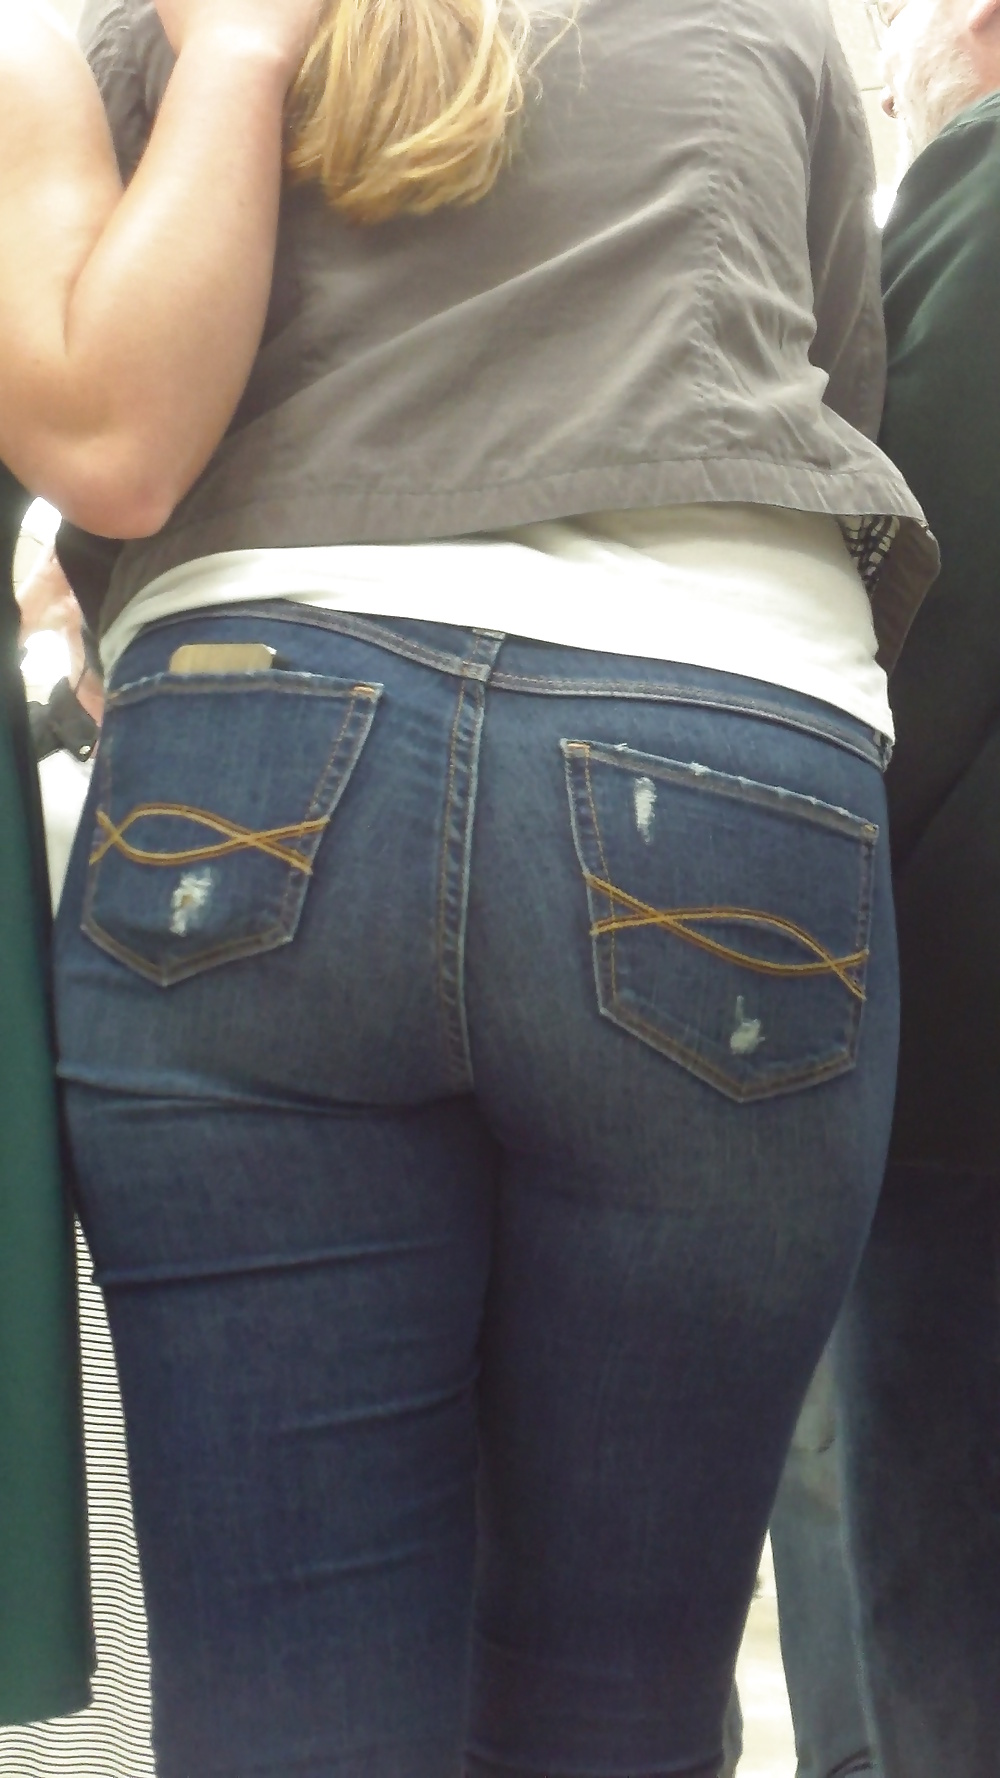 Popular teen girls ass & butt in jeans part 3 #25399287